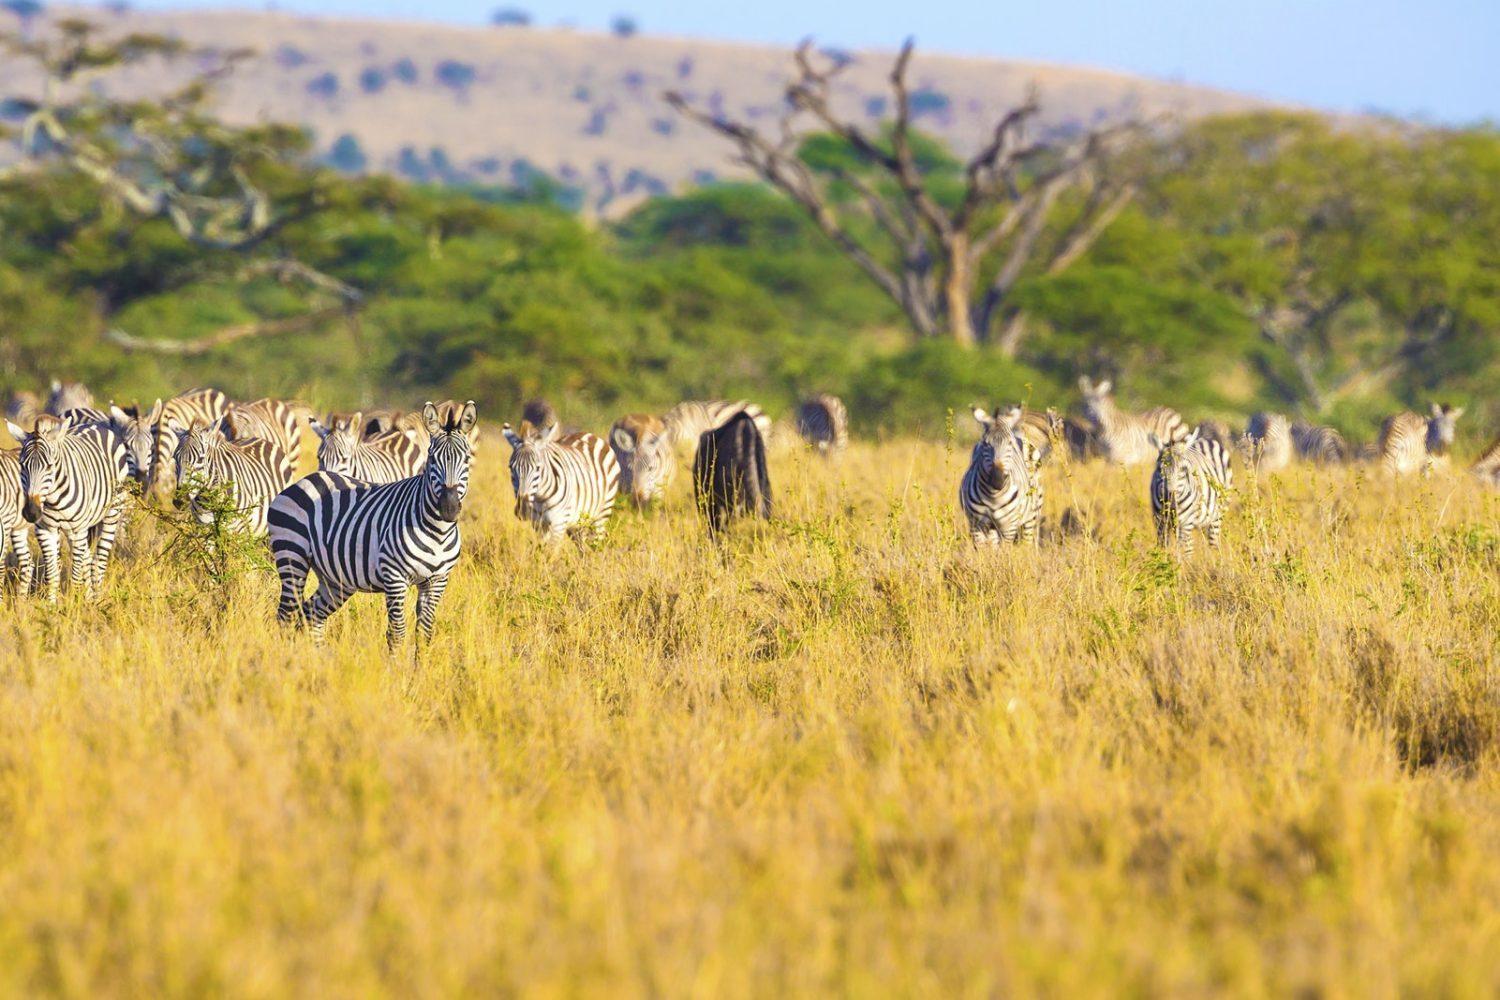 Large herd of zebras eating grass in Serengeti Africa